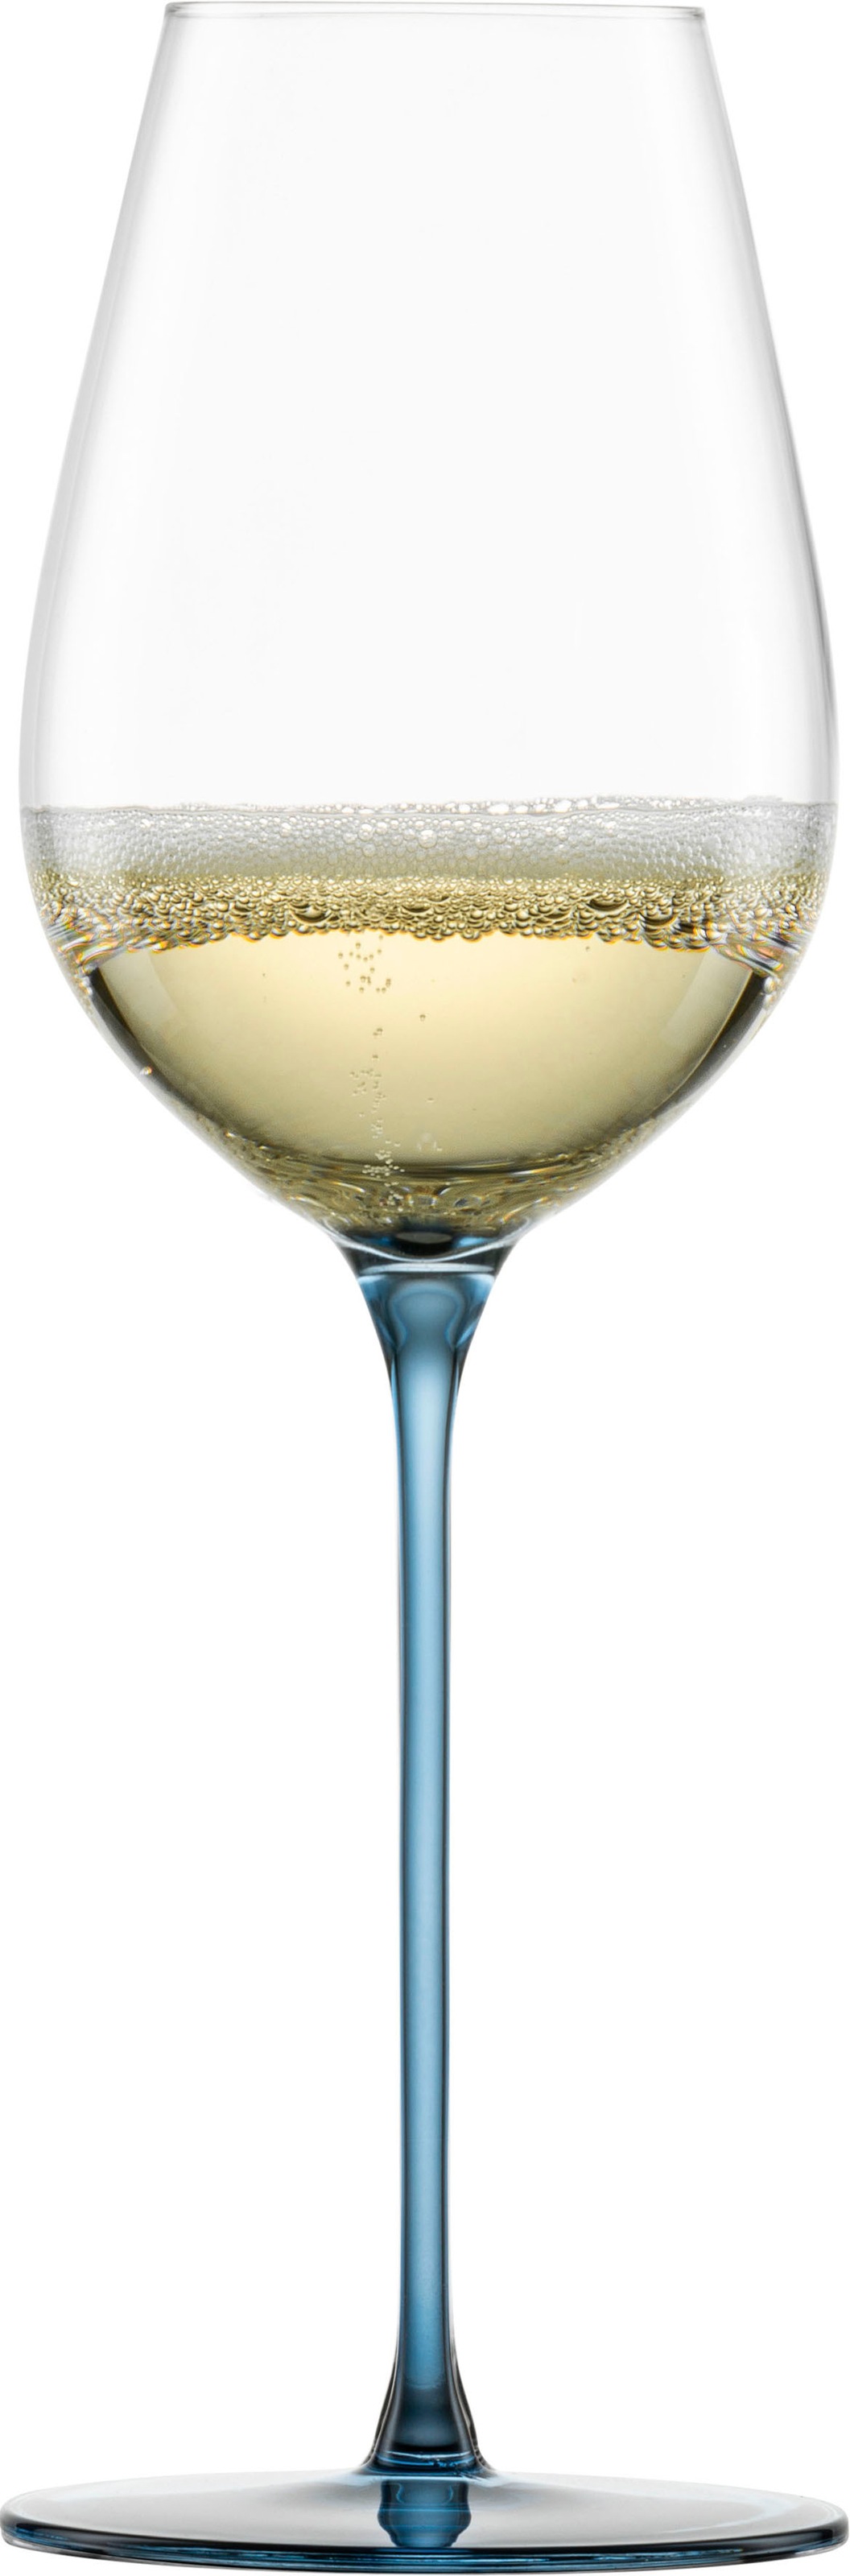 Eisch Champagnerglas »INSPIRE SENSISPLUS«, (Set, 2 tlg., 2 Gläser im Geschenkkarton), die Veredelung der Stiele erfolgt in Handarbeit, 400 ml, 2-teilig